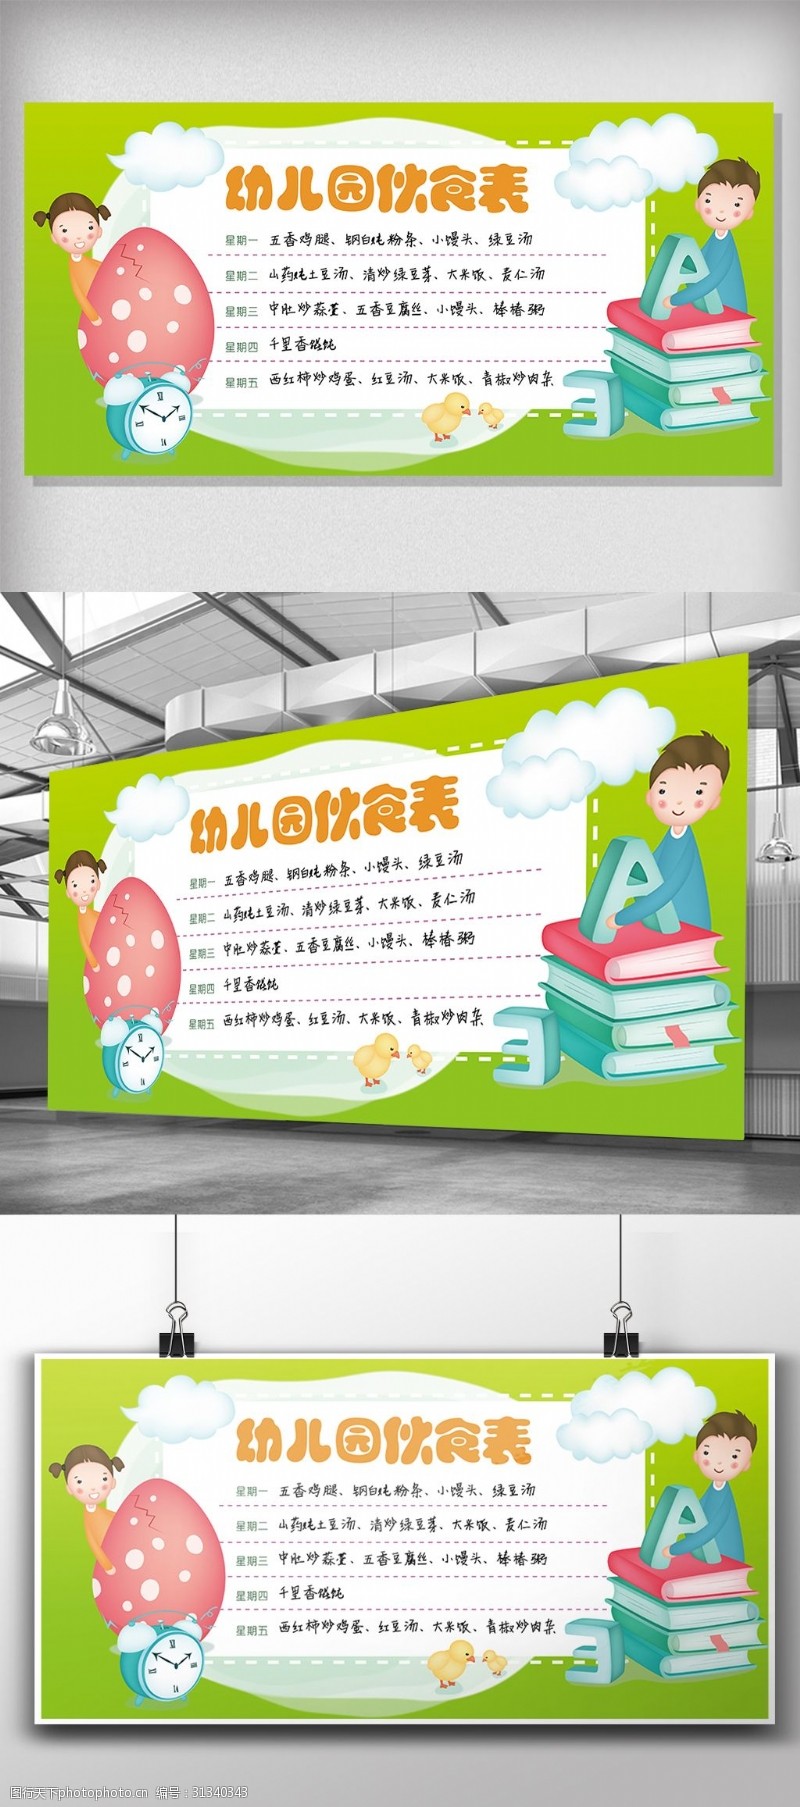 学校展板免费下载2018年绿色幼儿园伙食表展板免费下载